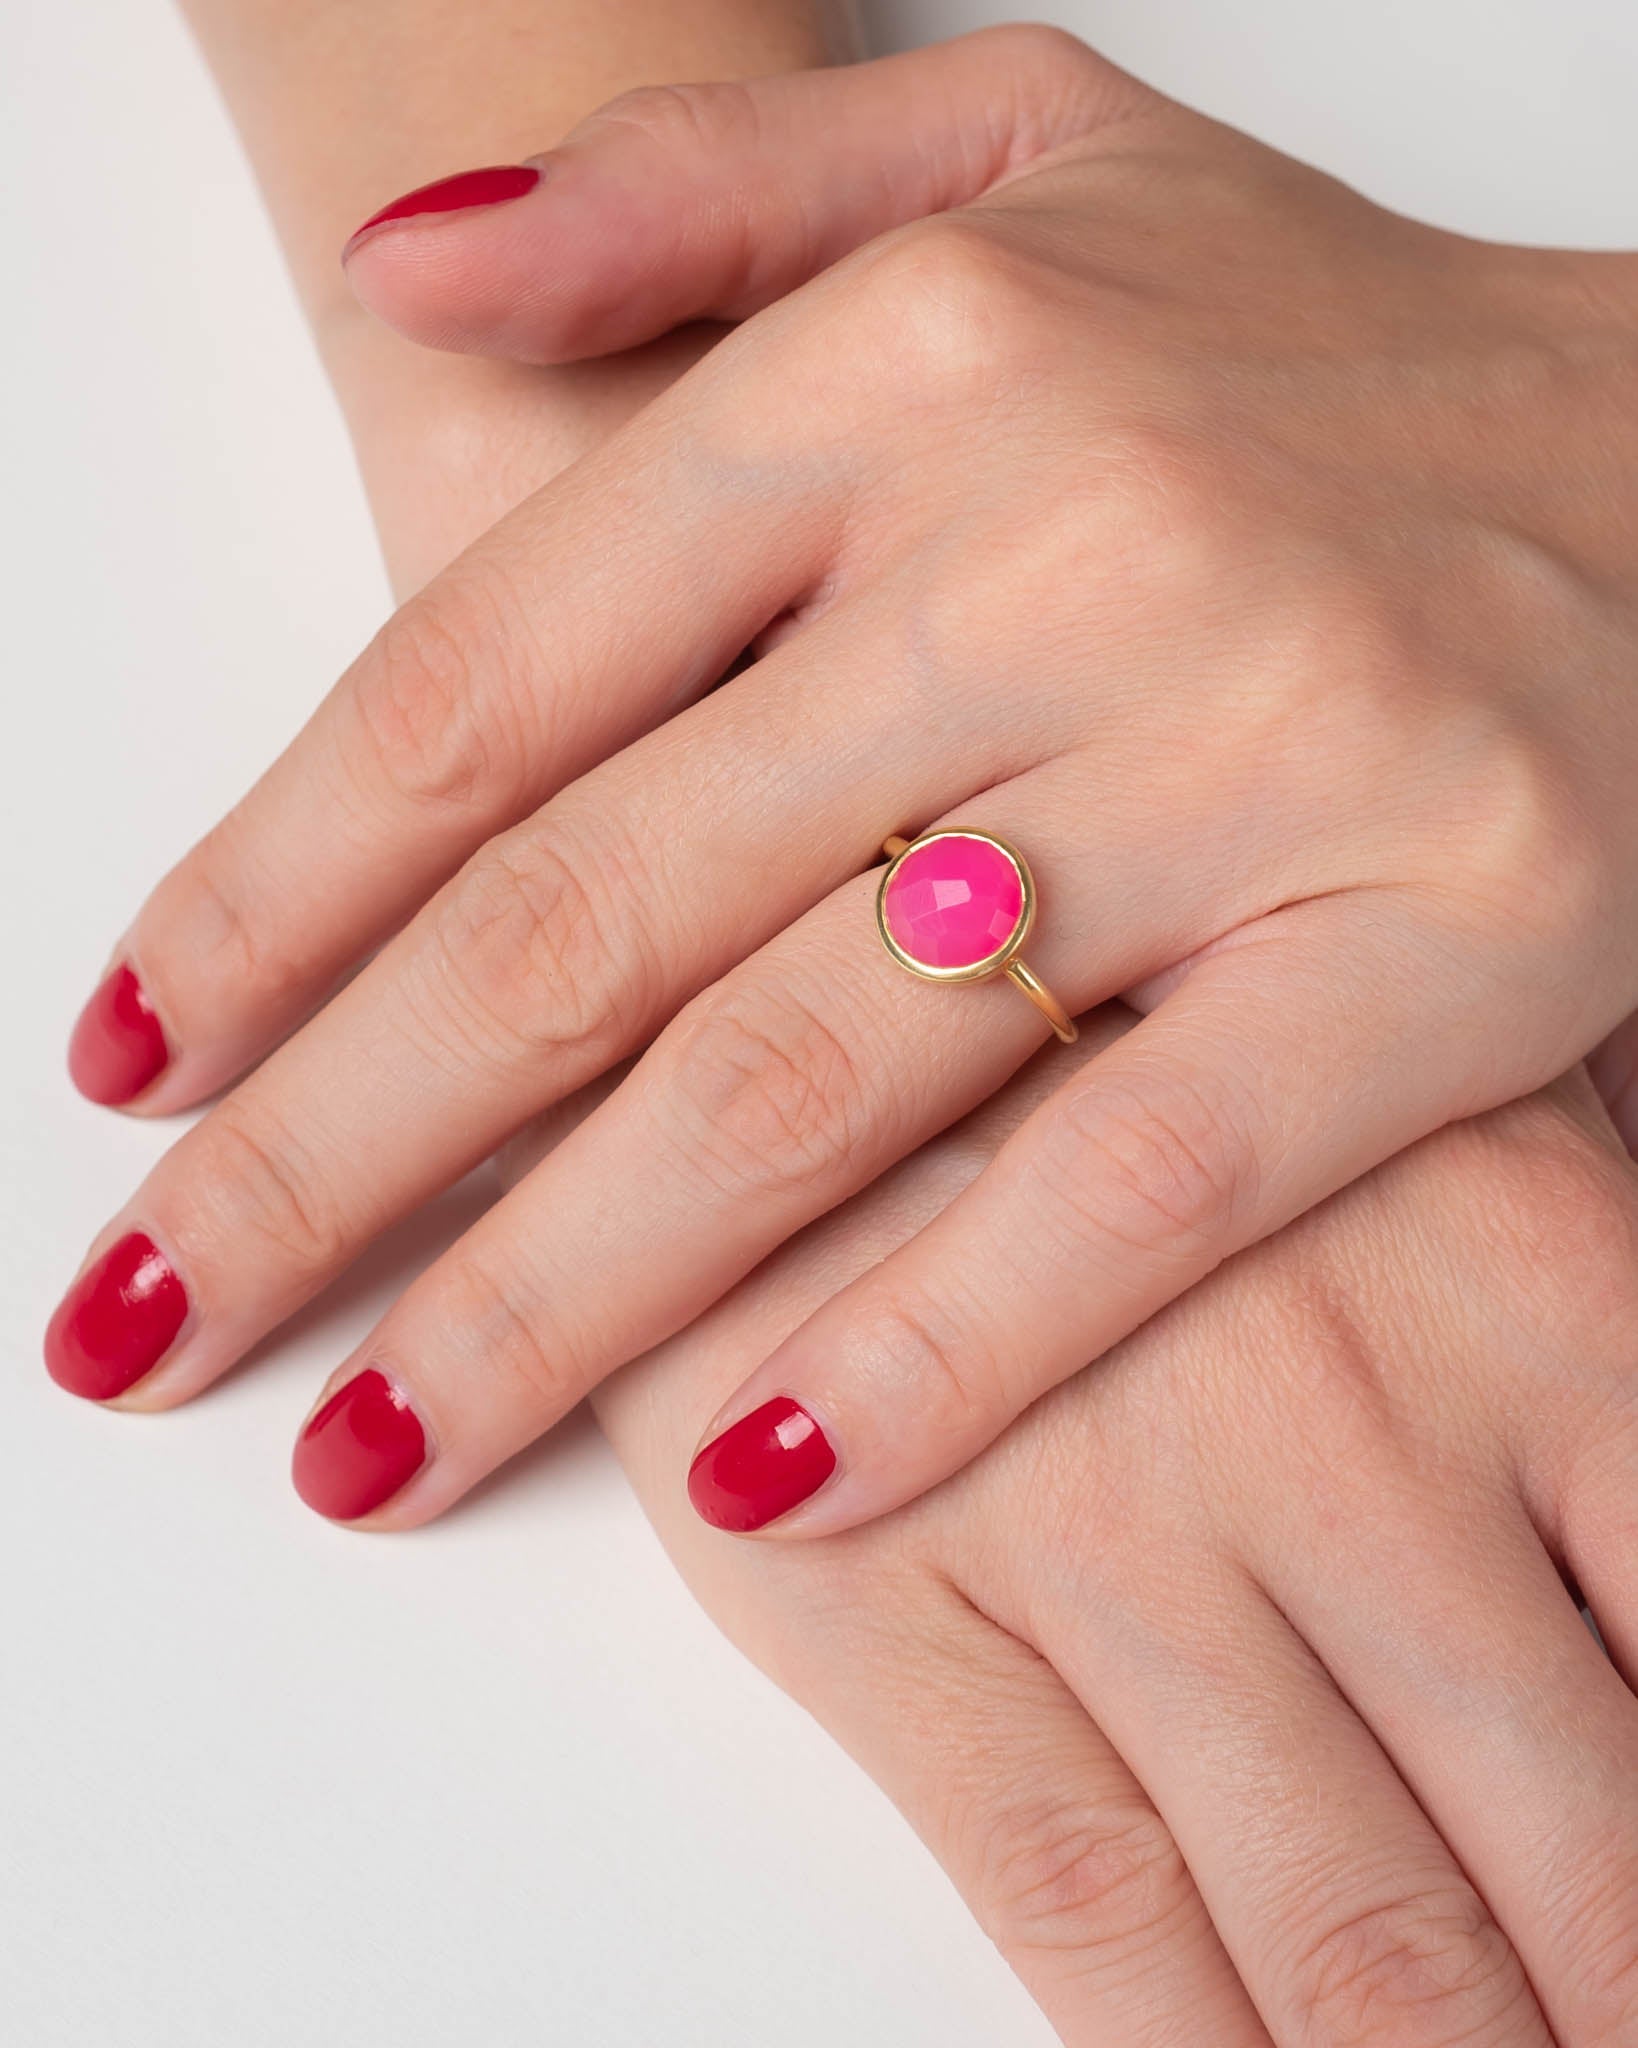 Ring Coco Hot Pink Chalcedon - Fleurs des Prés Jewelry